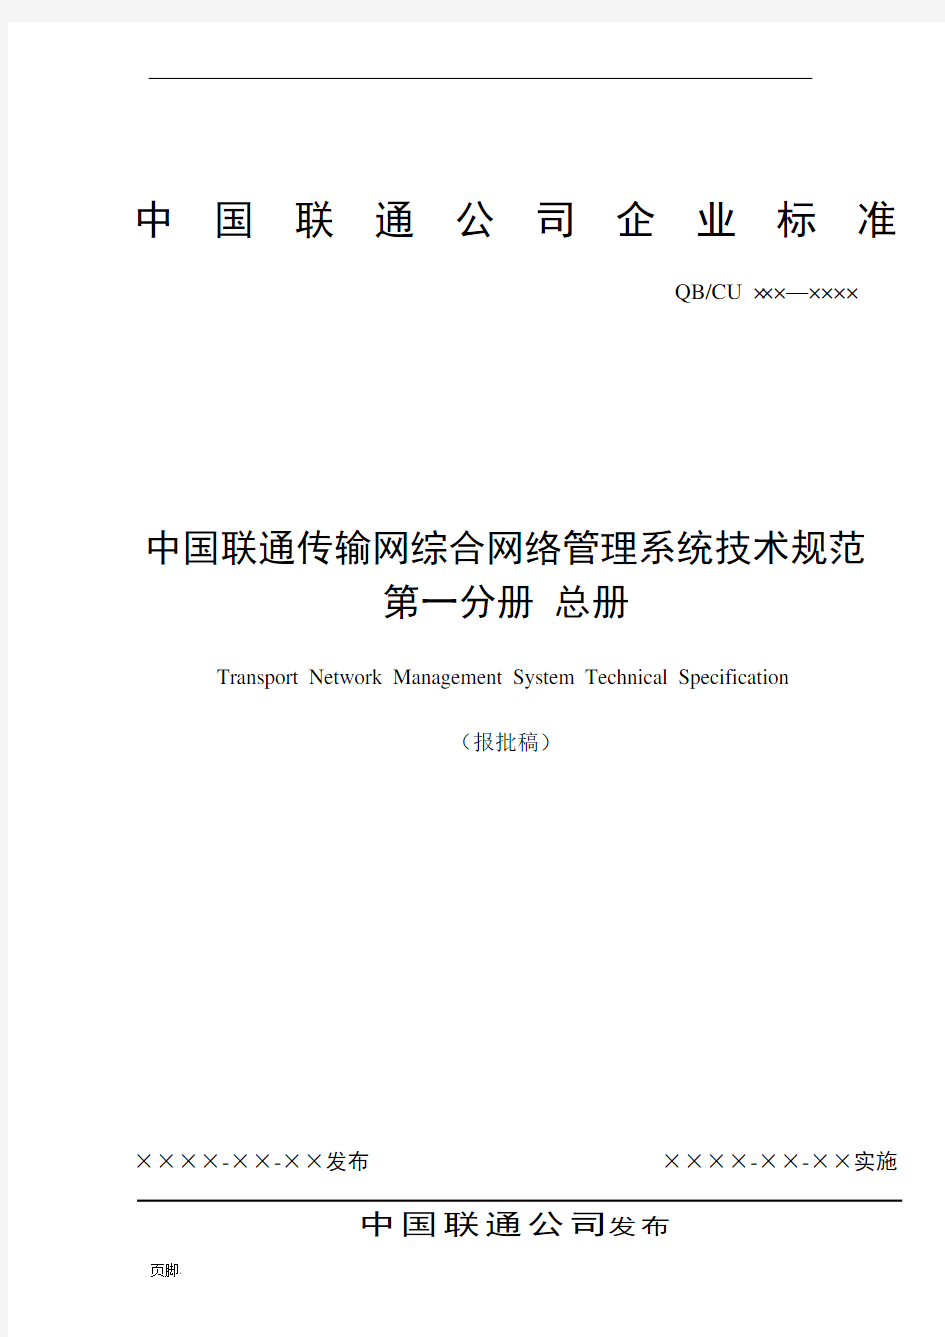 中国联通传输网综合网络管理系统技术规范总册